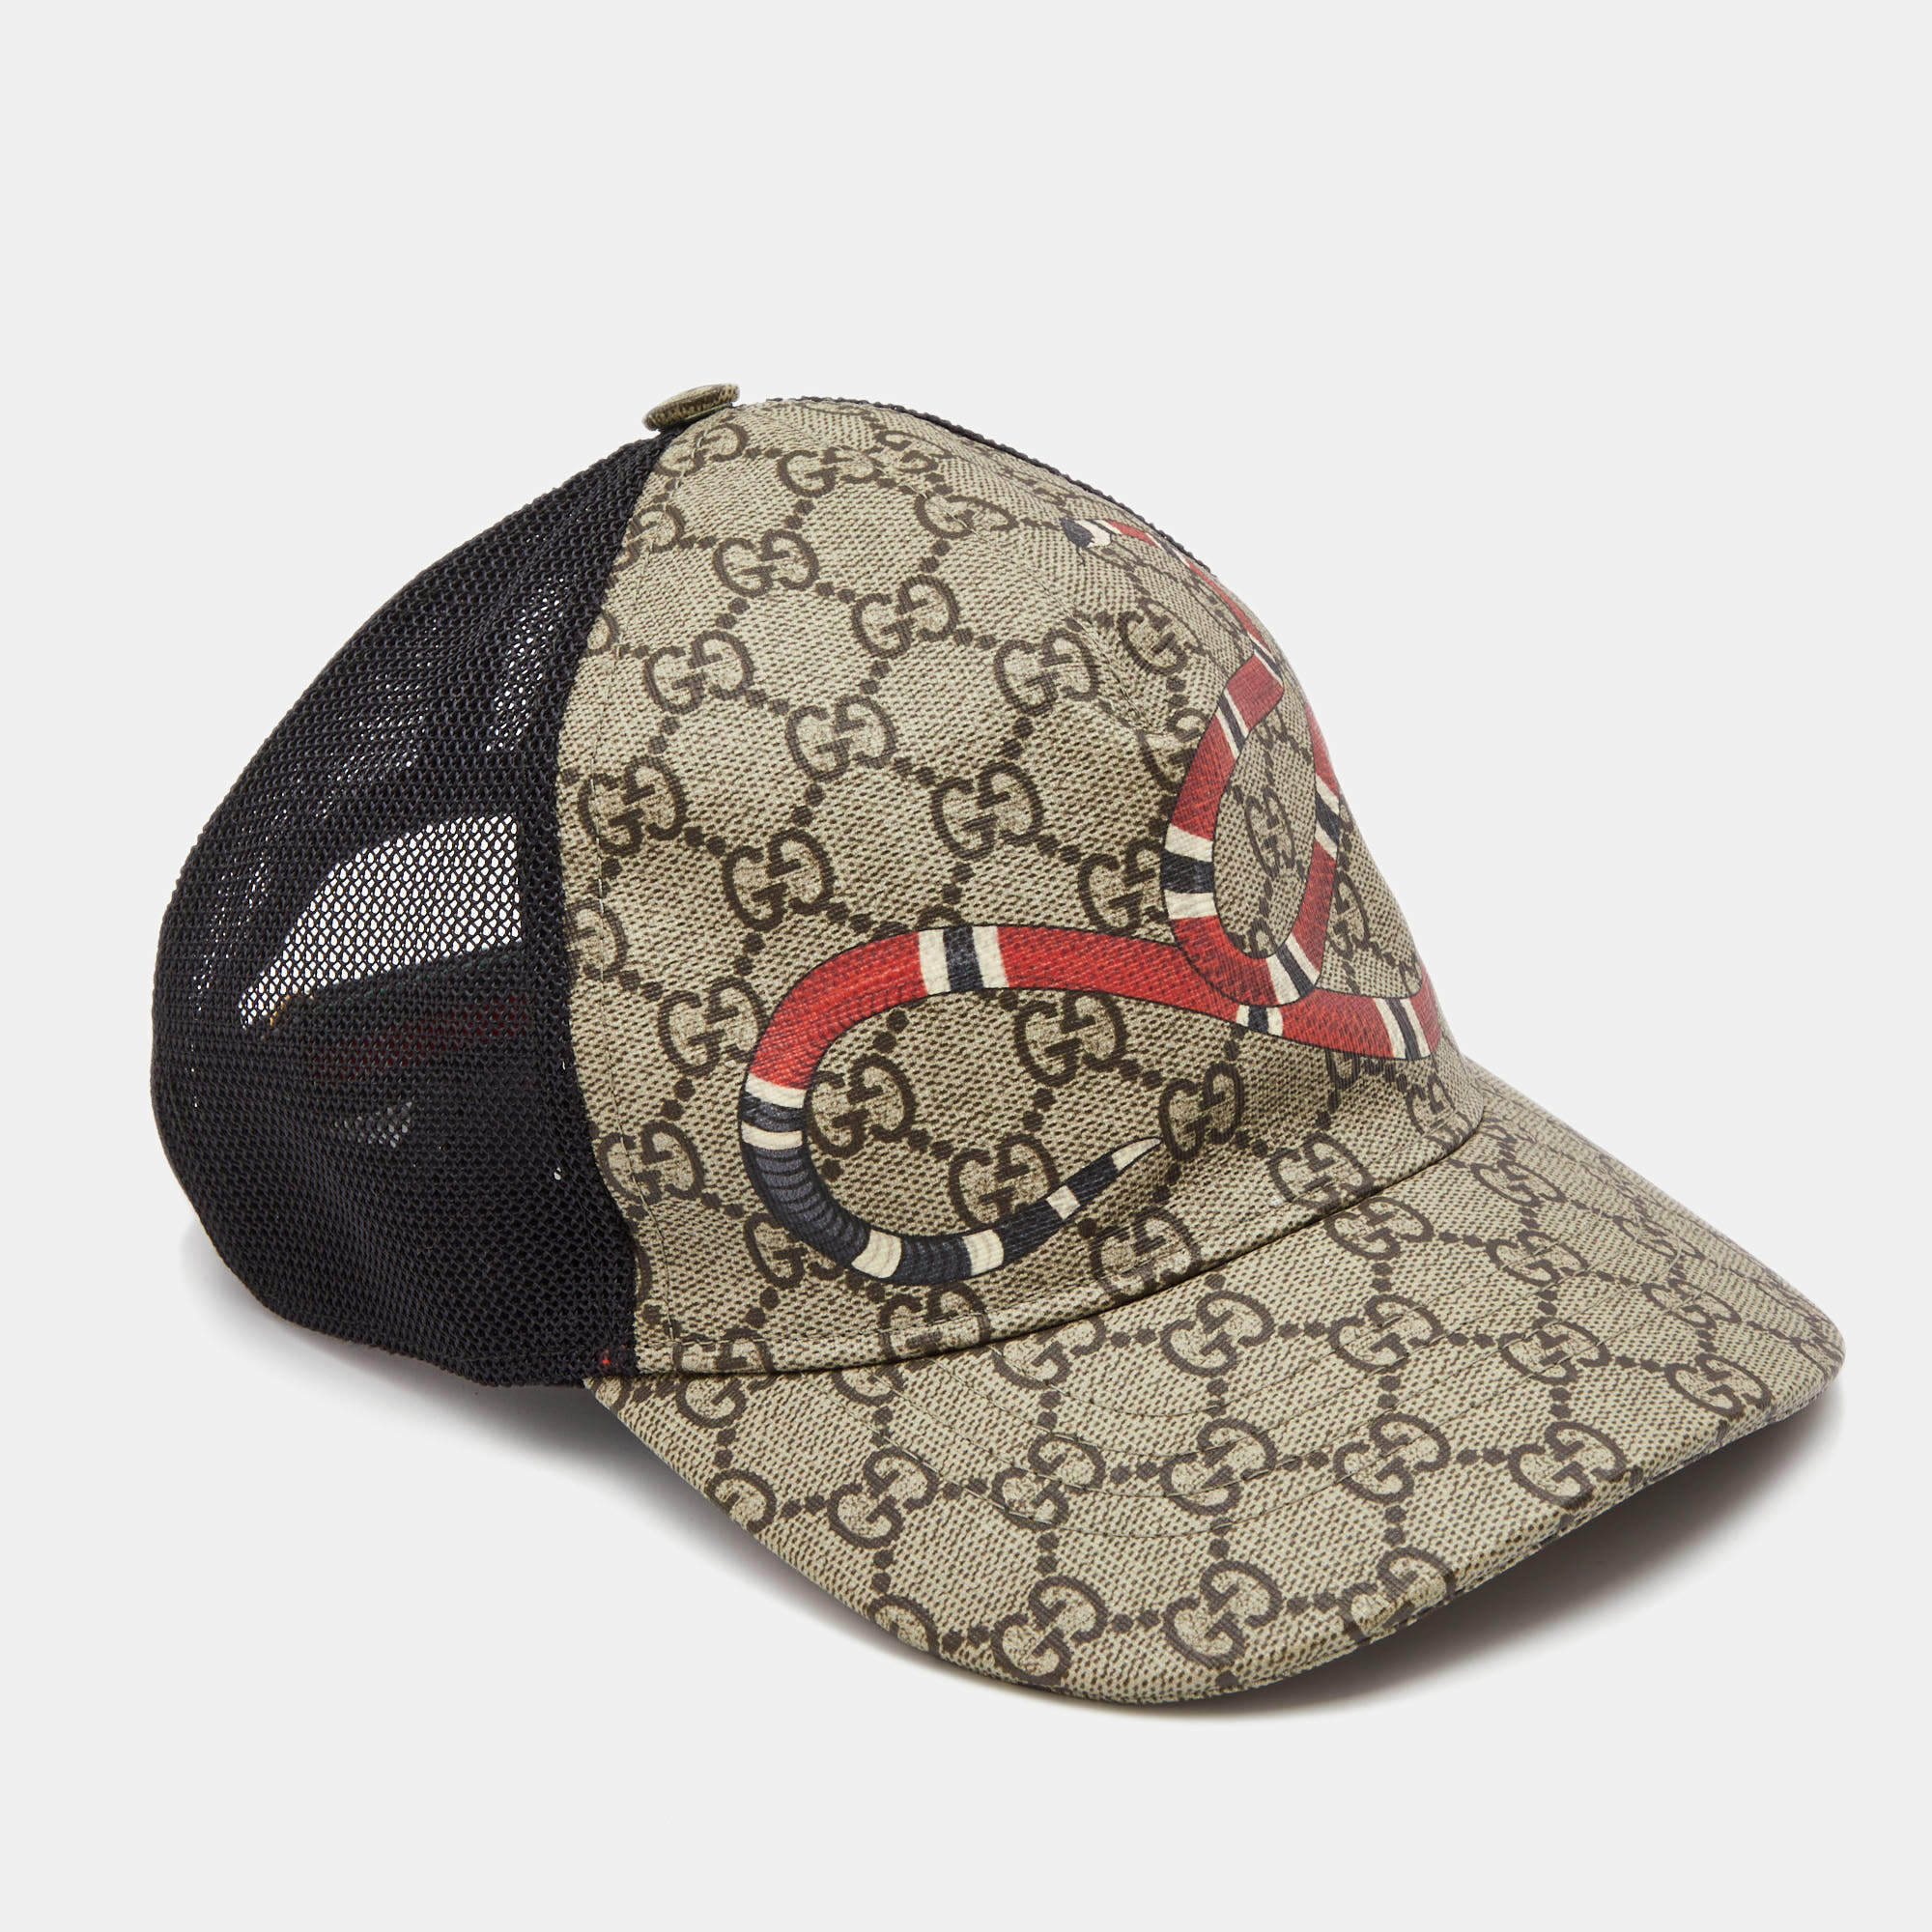 Gucci Kingsnake Baseball Jersey -  Worldwide Shipping